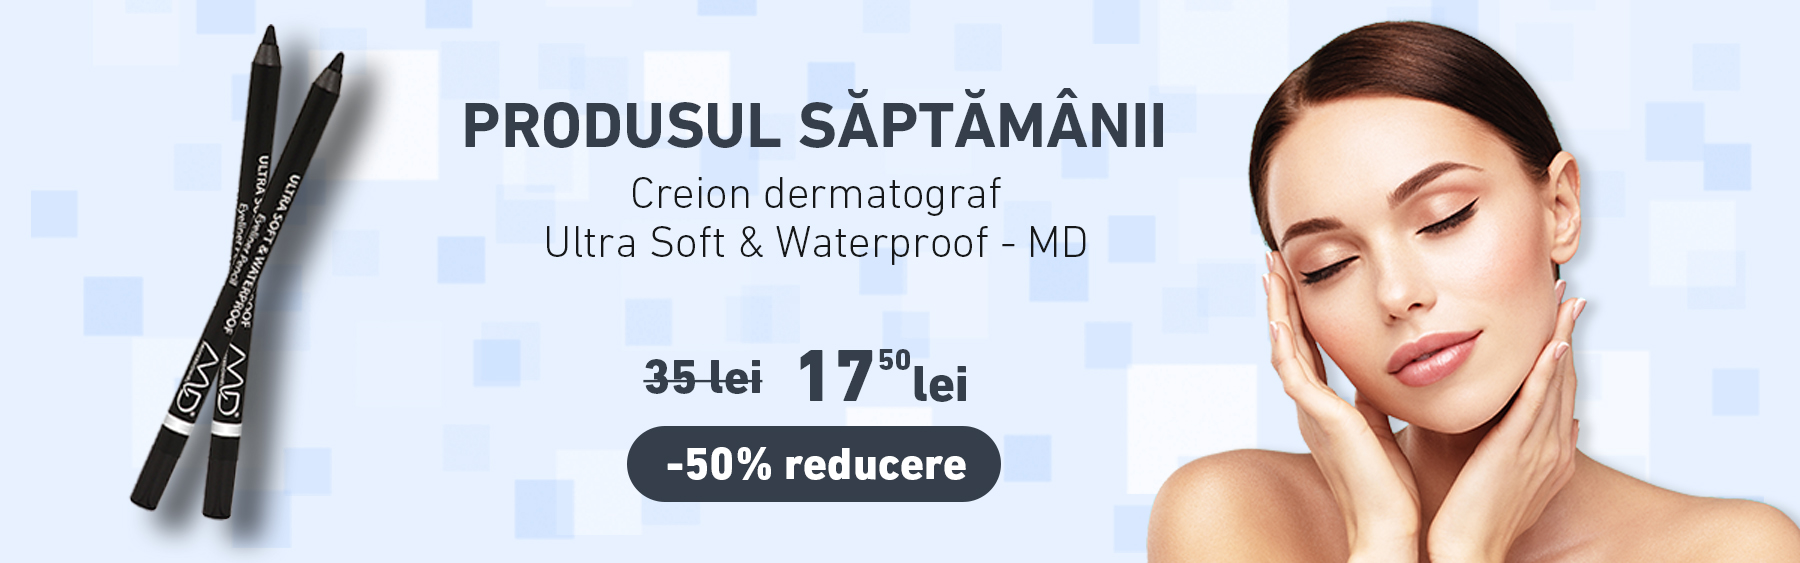 Creion dermatograf - Ultra Soft & Waterproof - MD cu -50% reducere